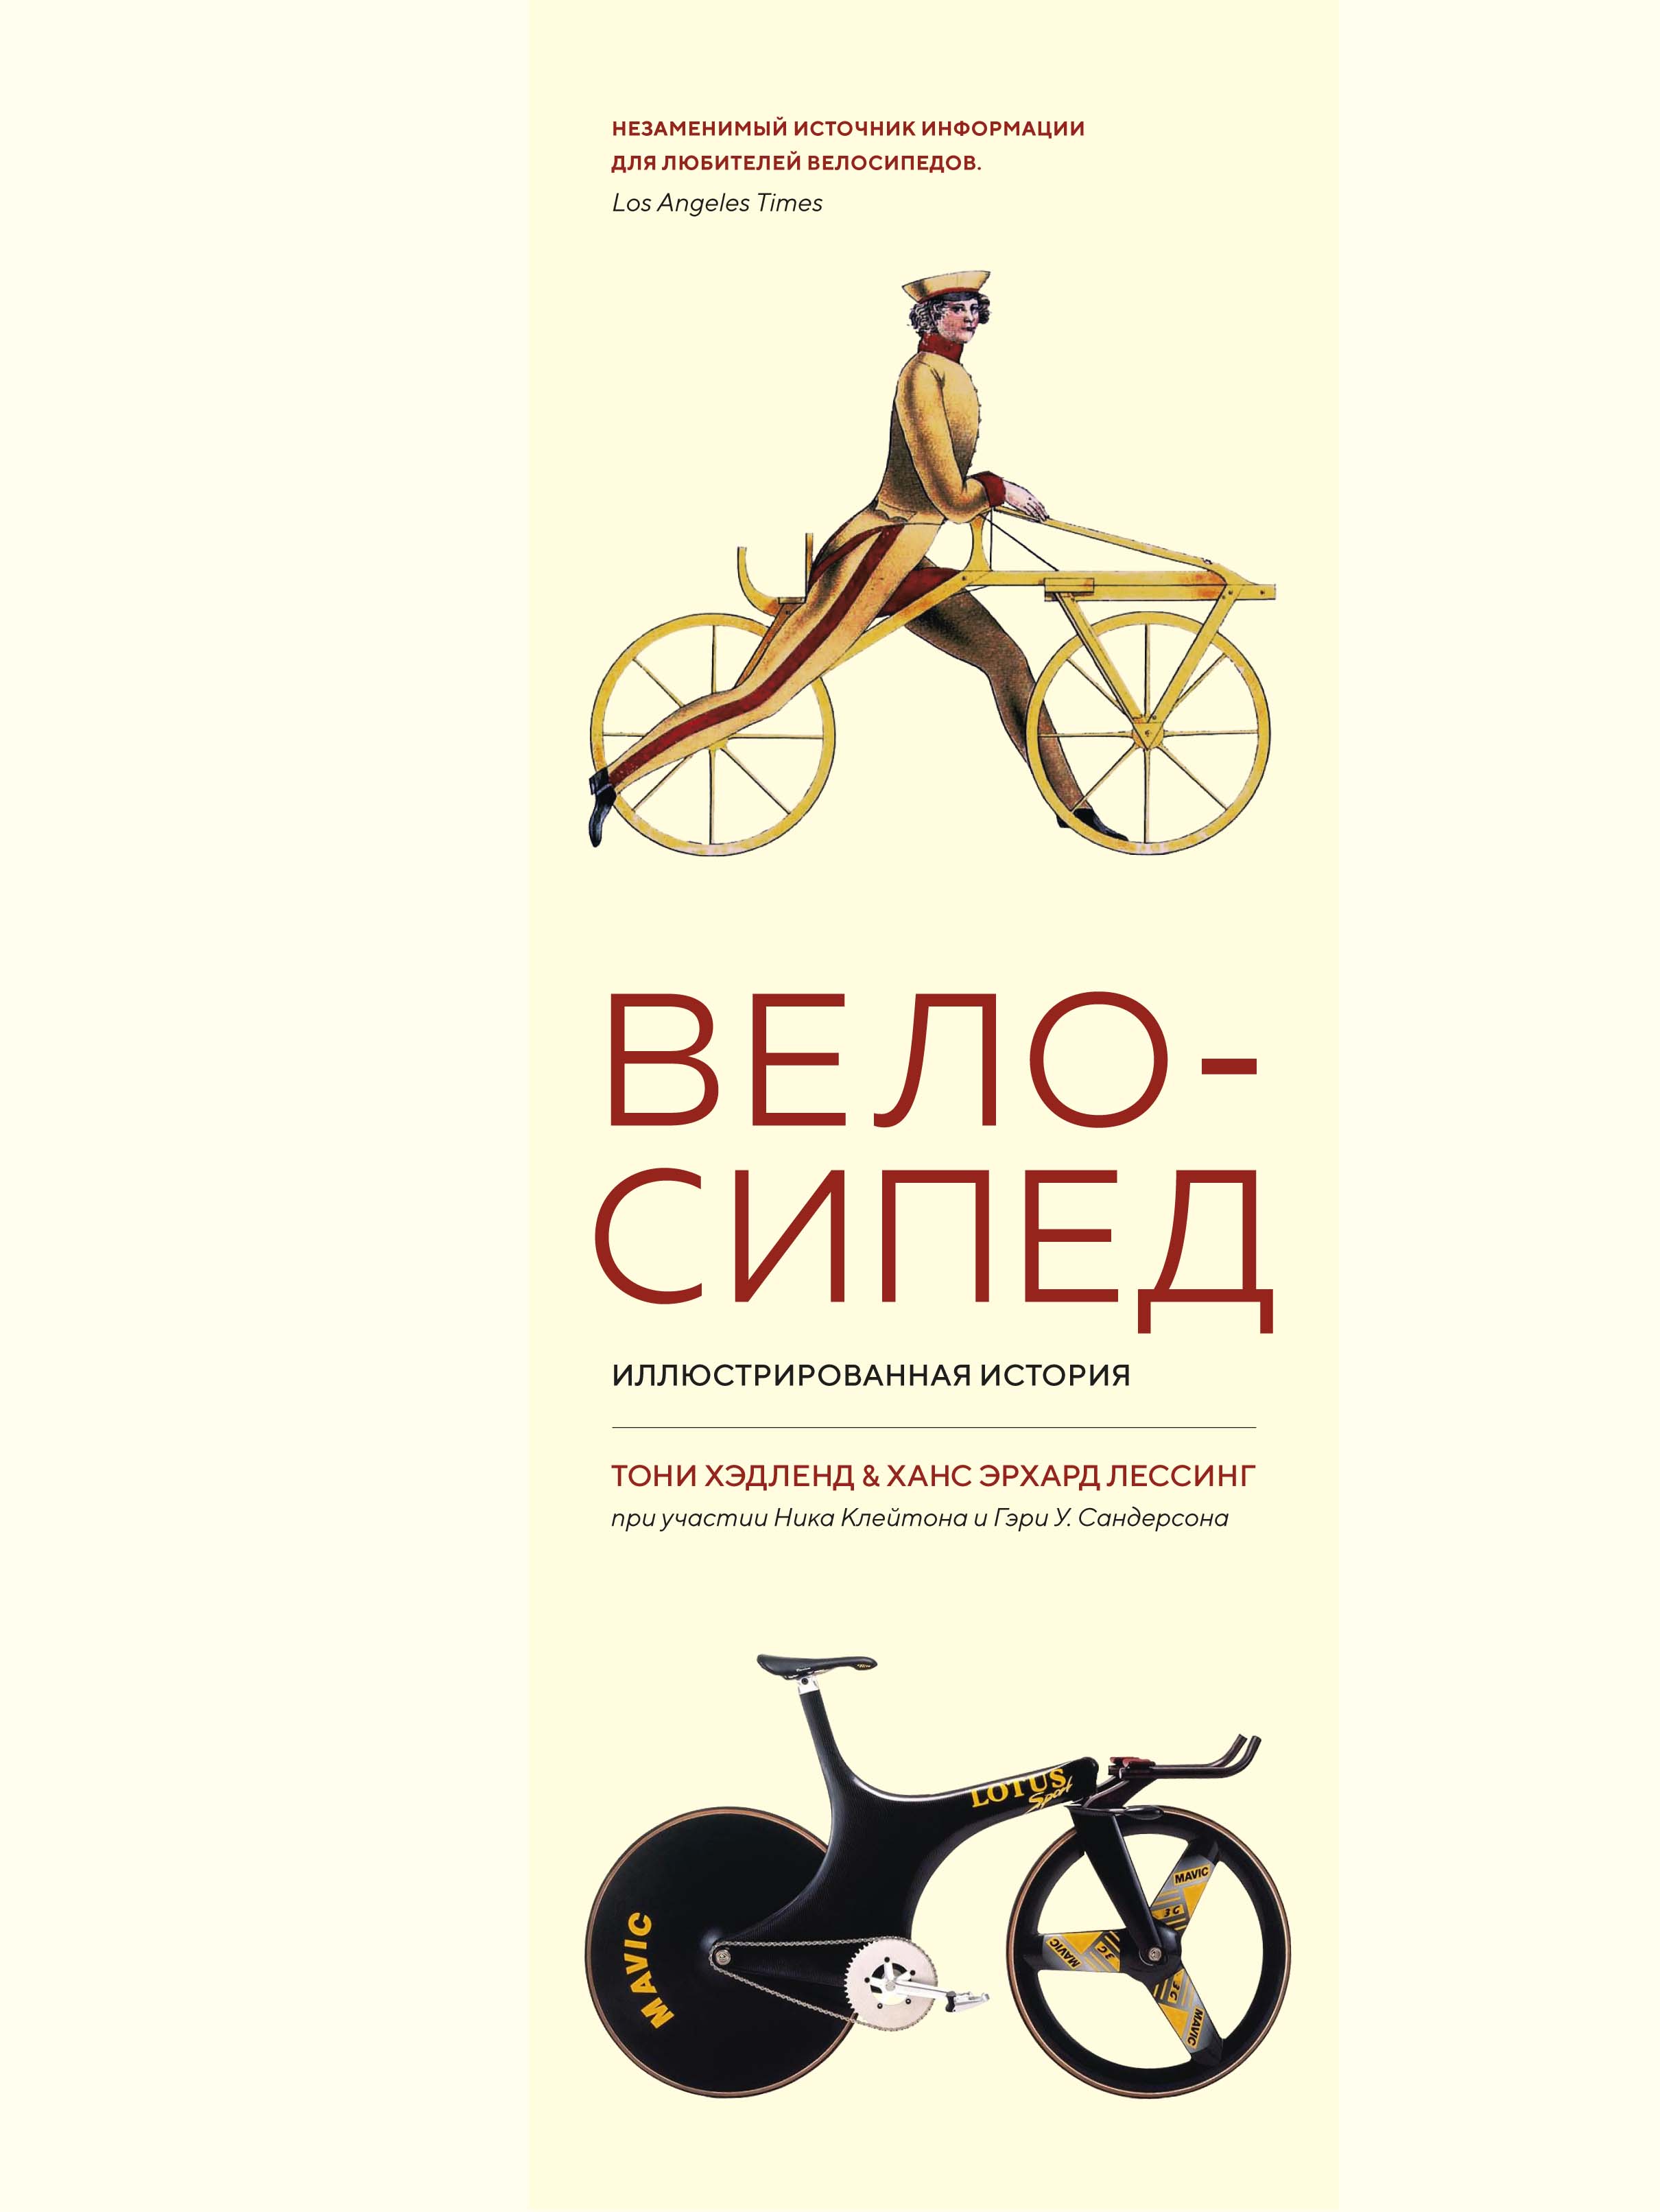 балет иллюстрированная история Велосипед. Иллюстрированная история